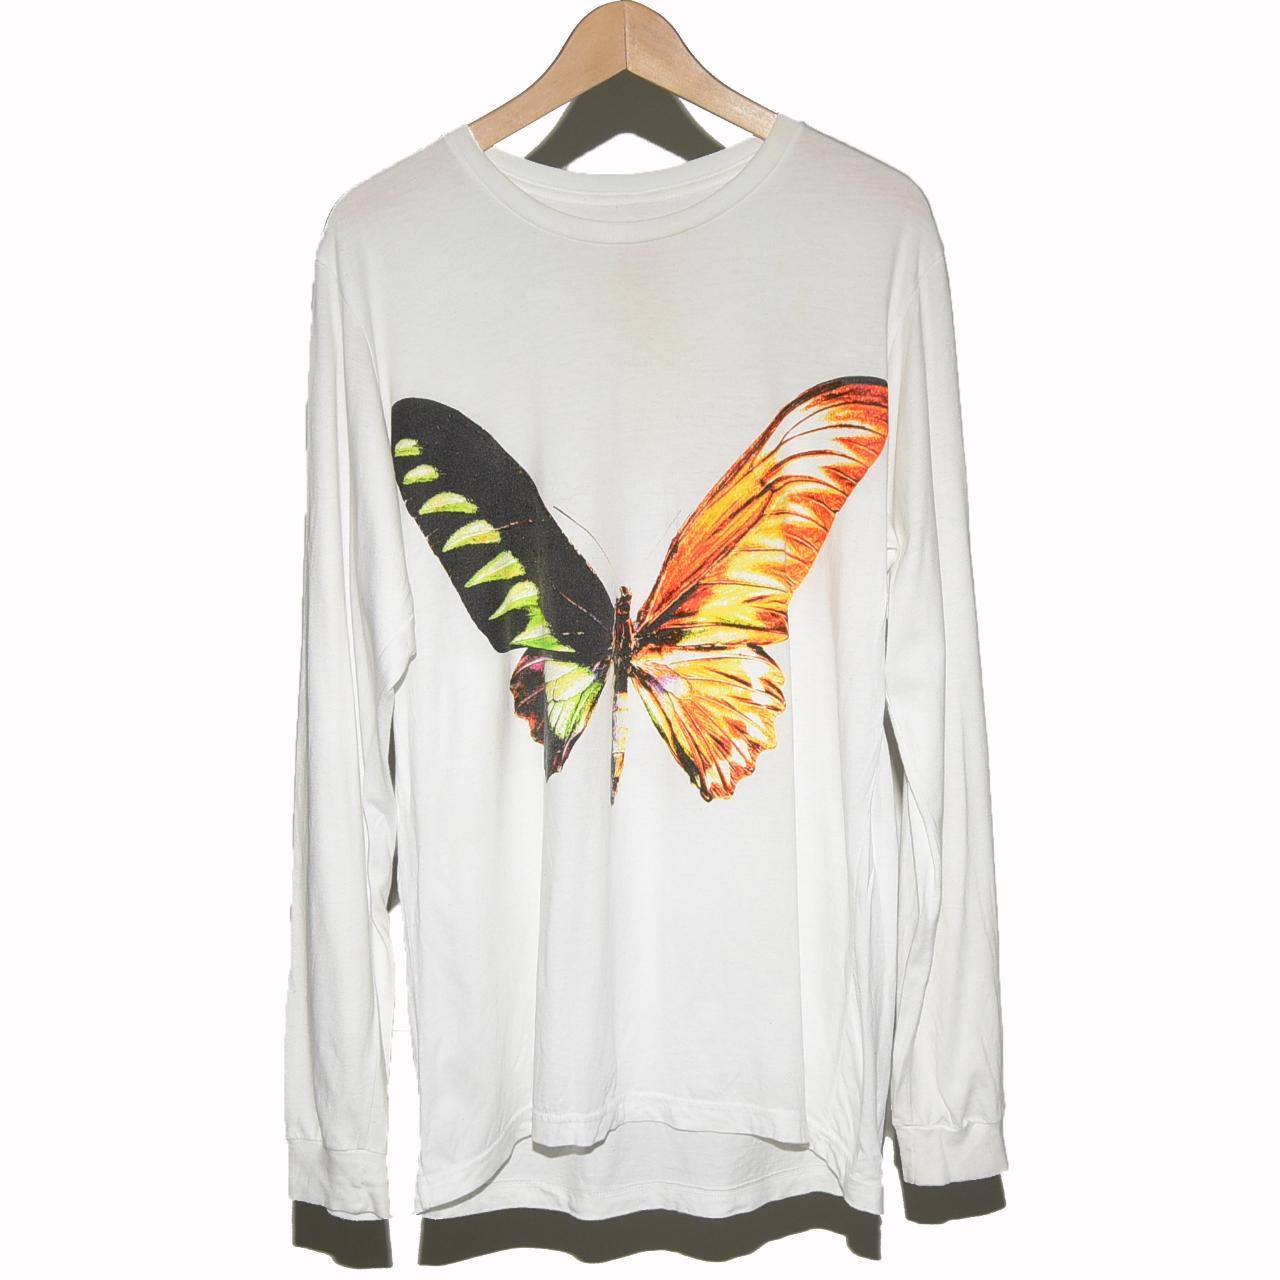 Playboi Carti Self Titled Tour Butterfly Long Sleeve... - Depop